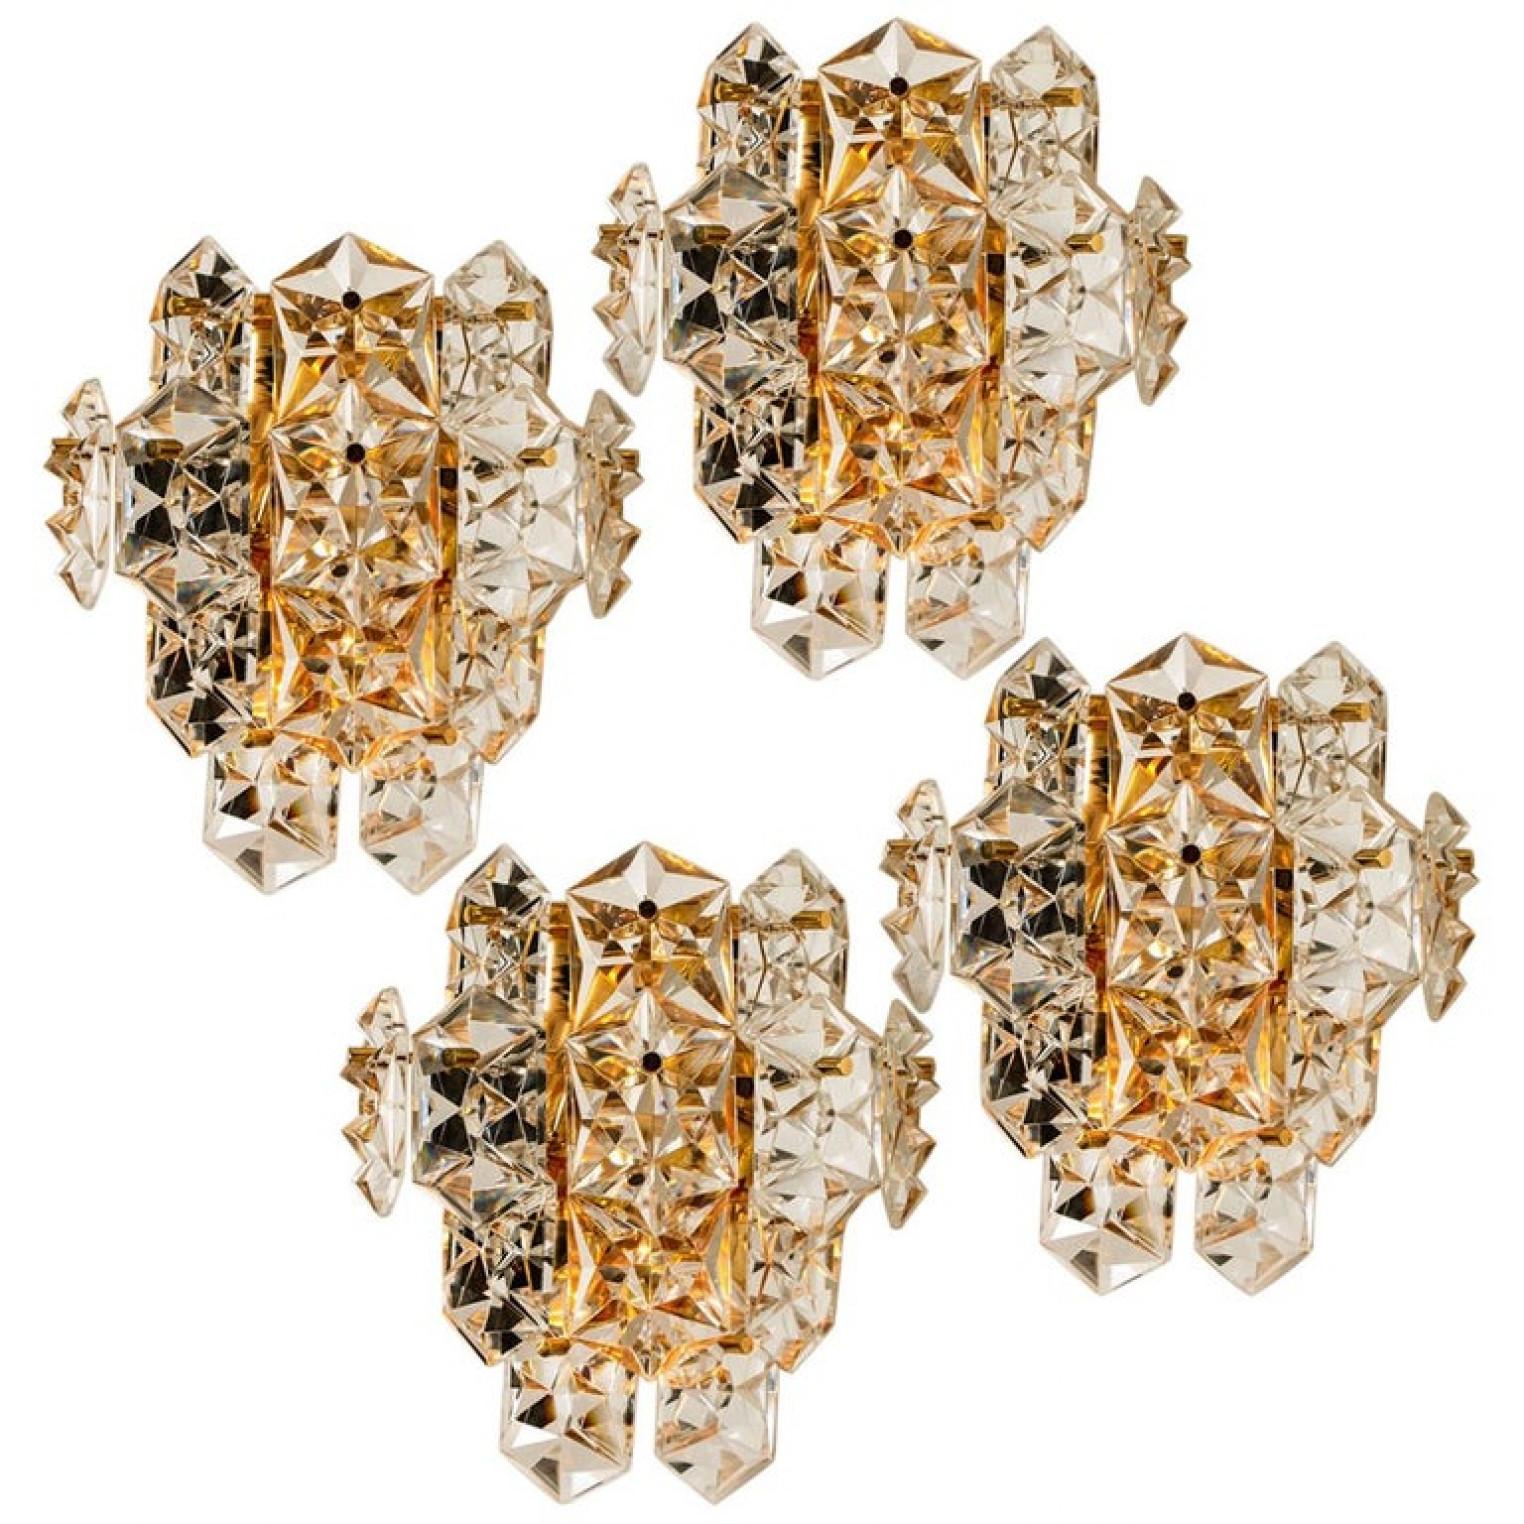 1 der 4 luxuriösen Paare von vergoldeten Rahmen und dicken Diamantkristall-Leuchten des famosen Herstellers Kinkeldey. Sehr elegante Beleuchtungskörper, die zu allen Einrichtungsstilen passen. Die Kristalle sind sorgfältig so geschliffen, dass sie